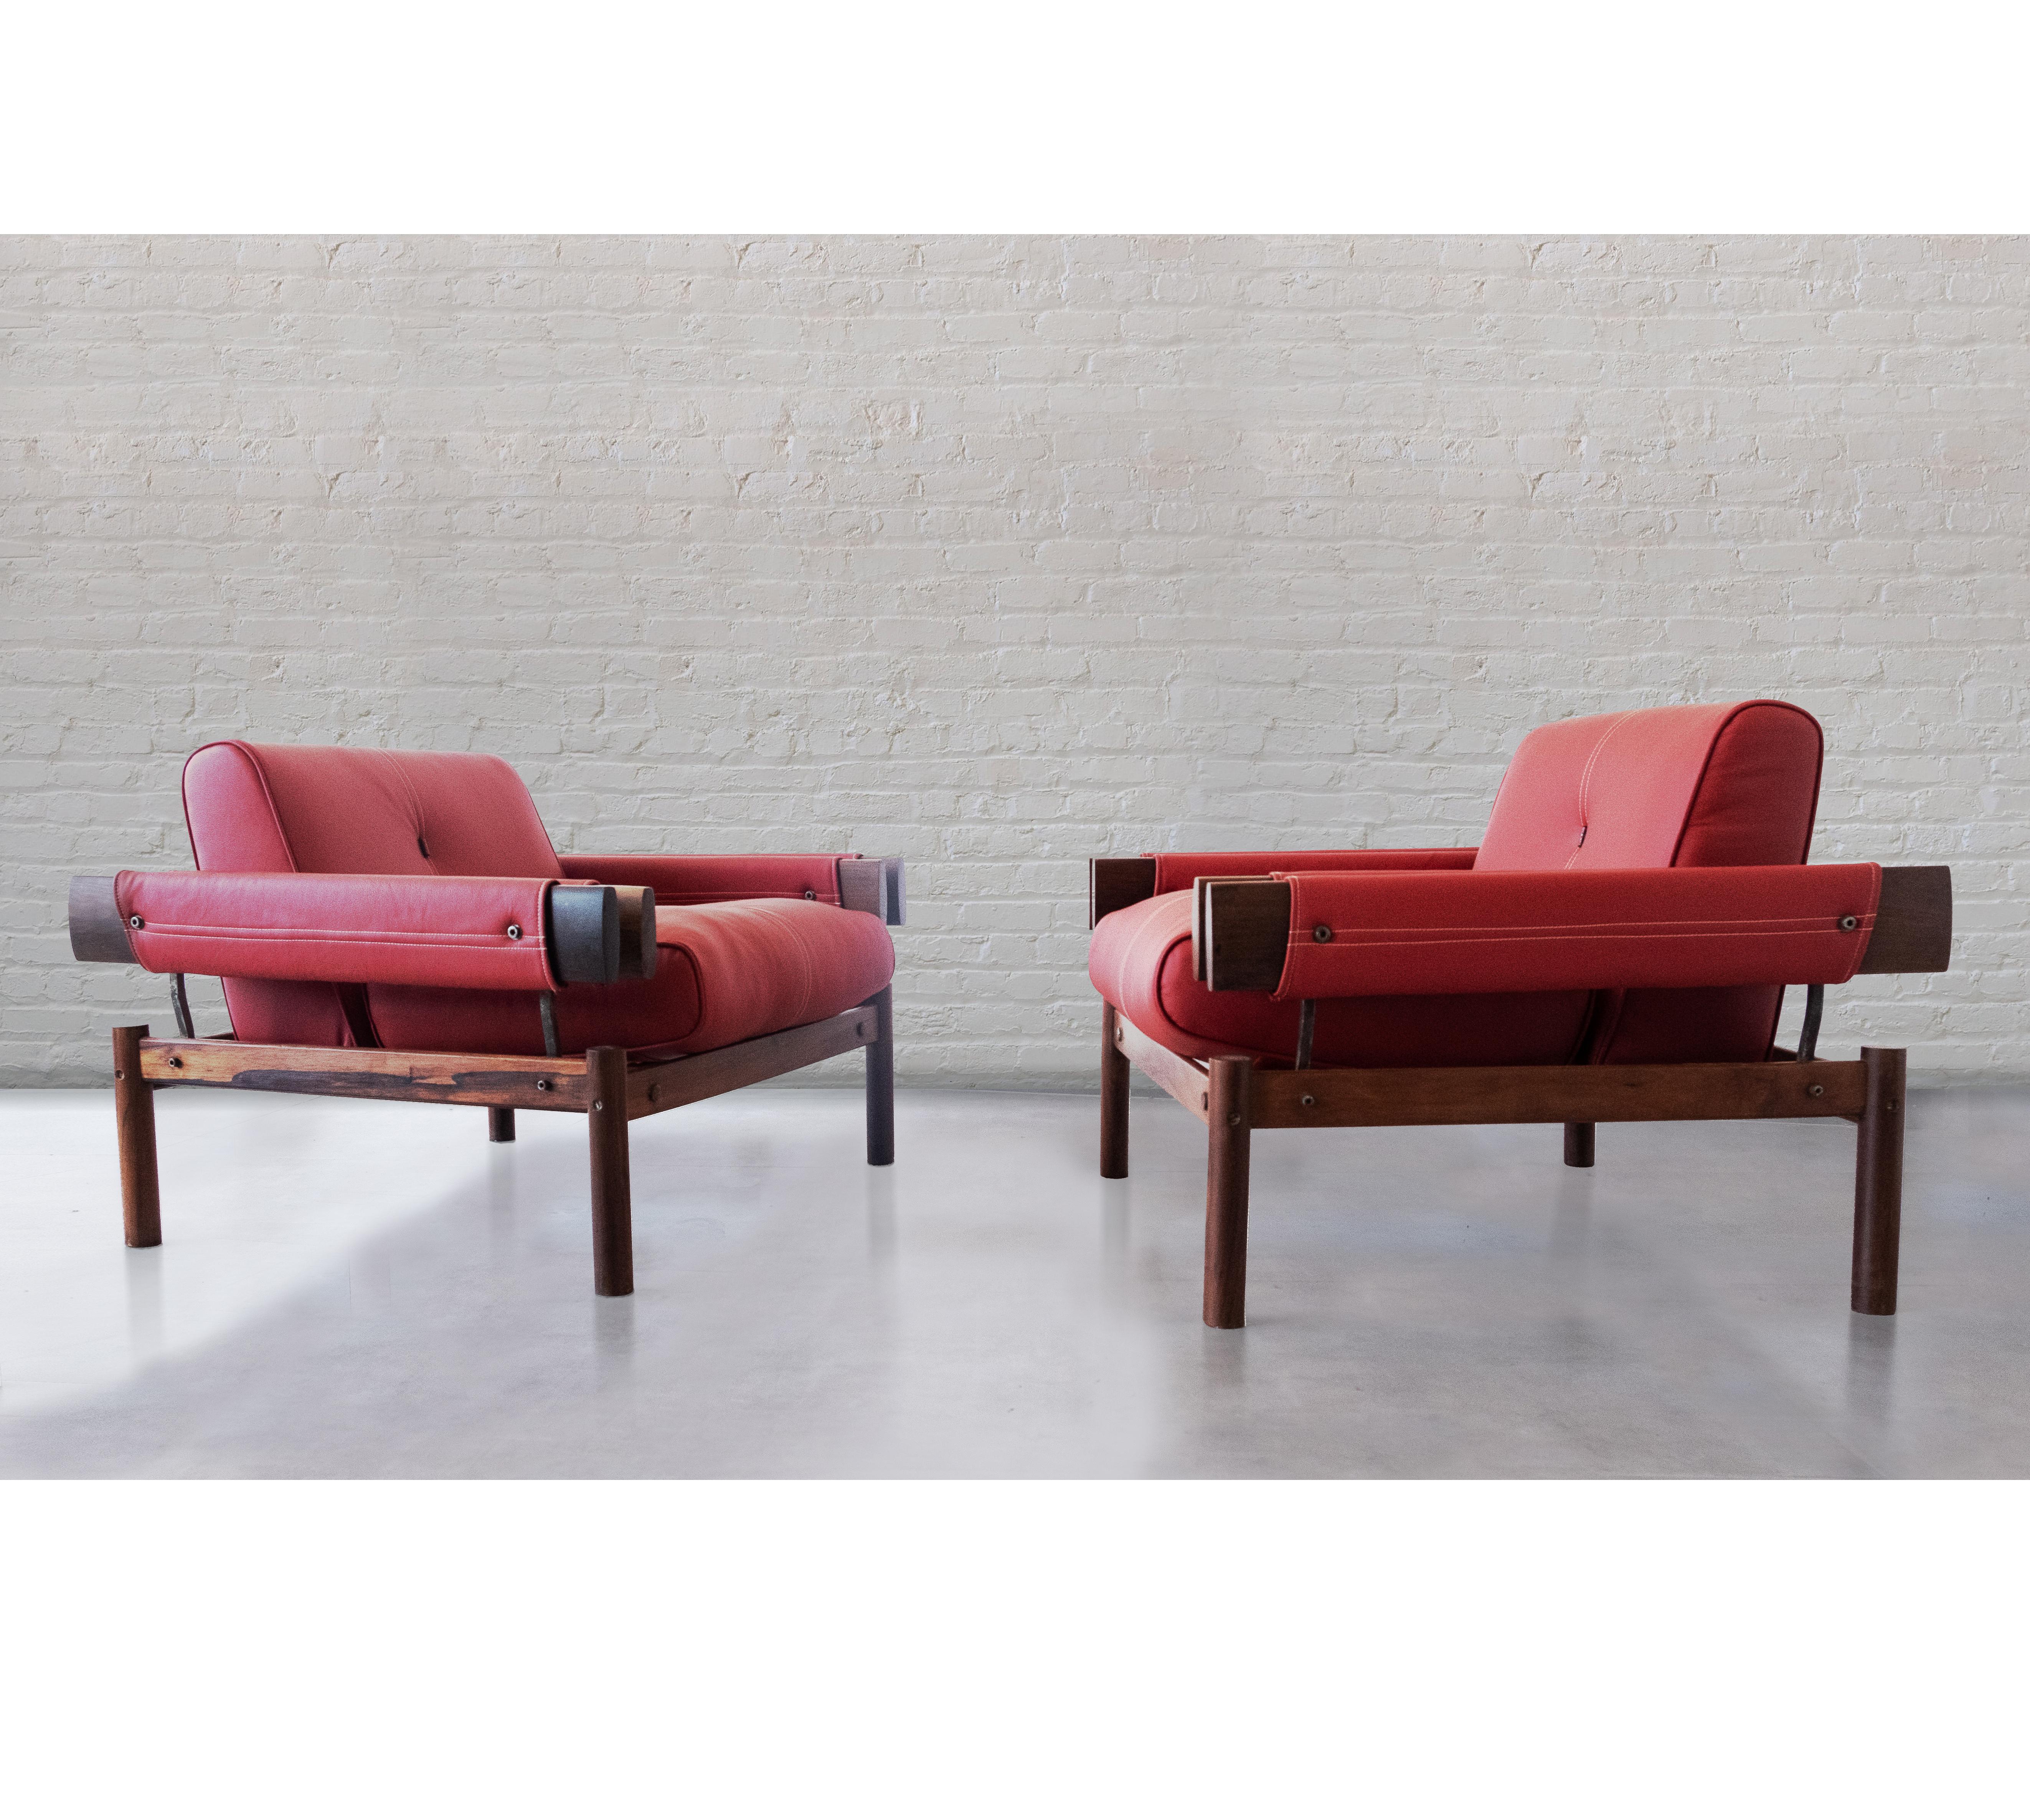 Ein Paar schöne MP19-Sessel, entworfen und hergestellt von Percival Lafer. Brasilien um 1967.

Trotz des großen Querschnitts der Holzteile und ihrer Solidität wirkt dieser Entwurf leicht, da die Sitze und Armlehnen in der Stuhlstruktur zu schweben